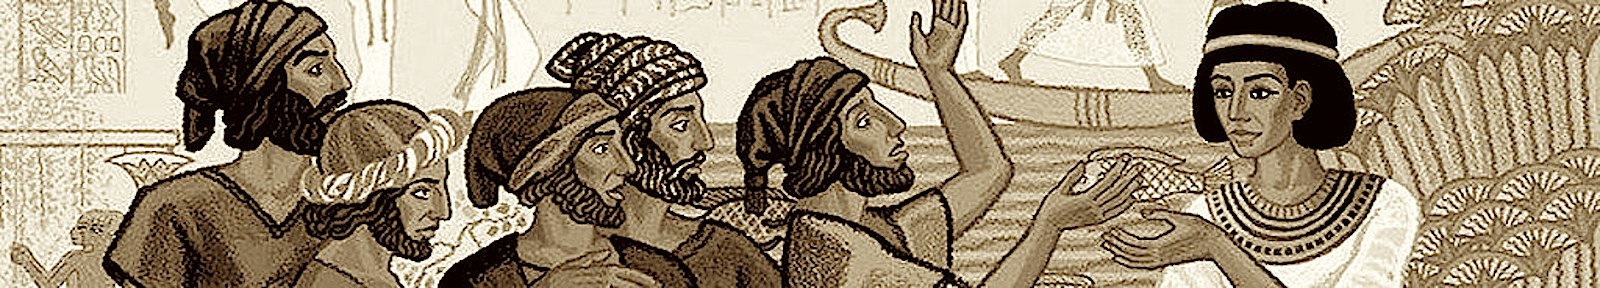 Братья Иосифа встречаются с ним в Египте